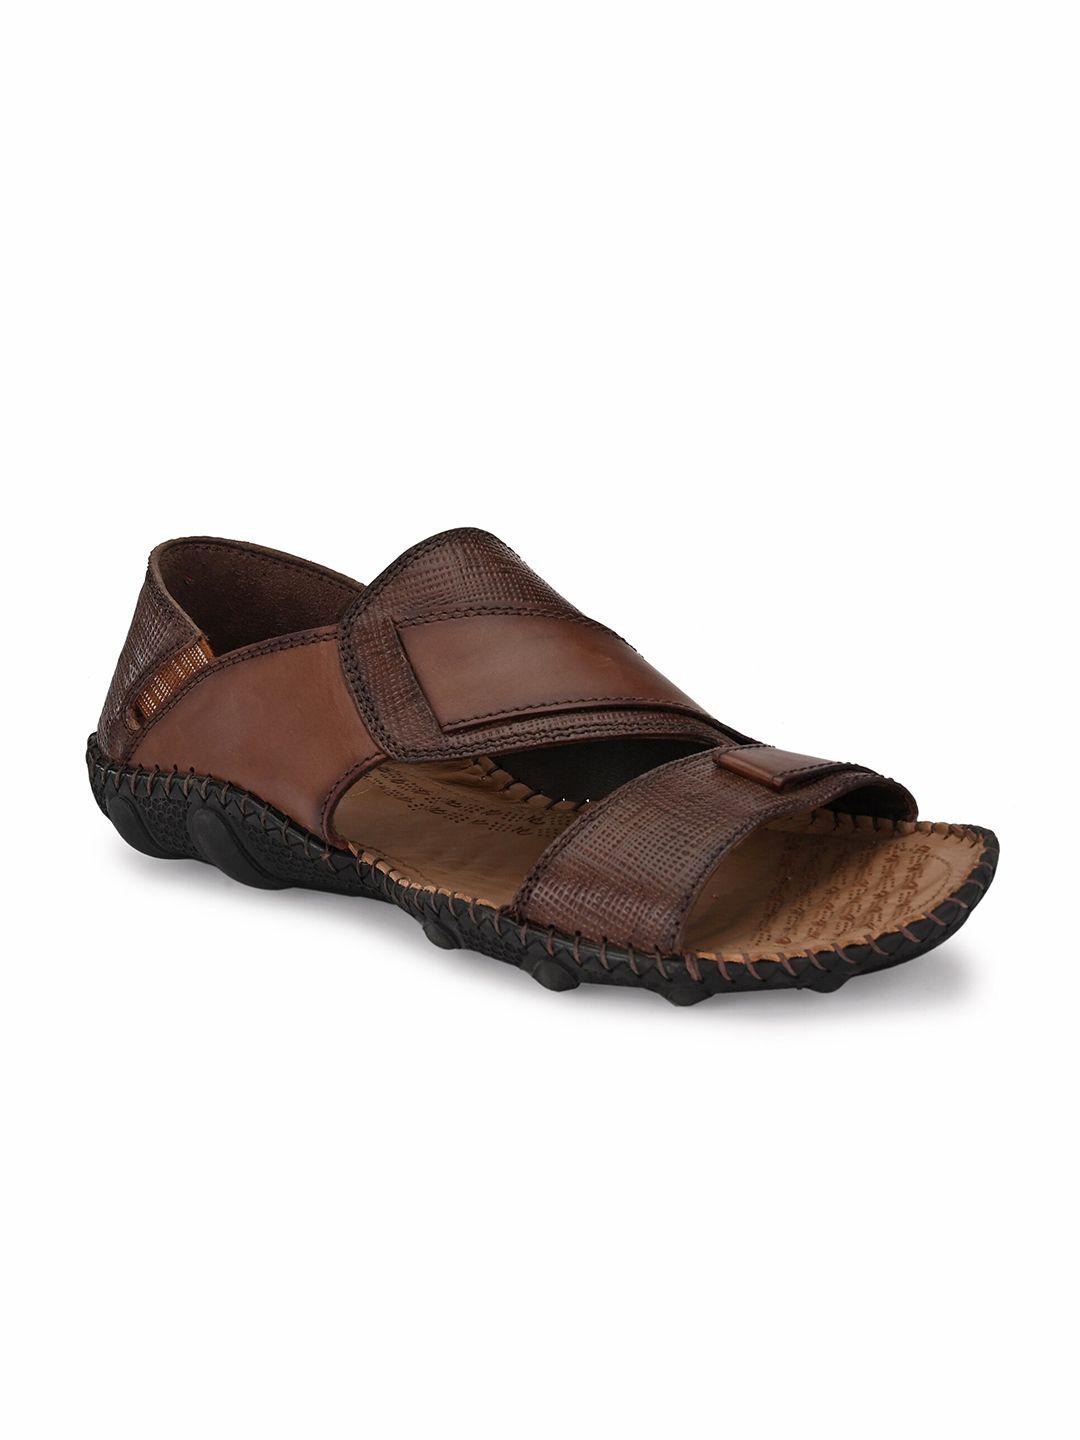 hitz-men-brown-leather-comfort-sandals